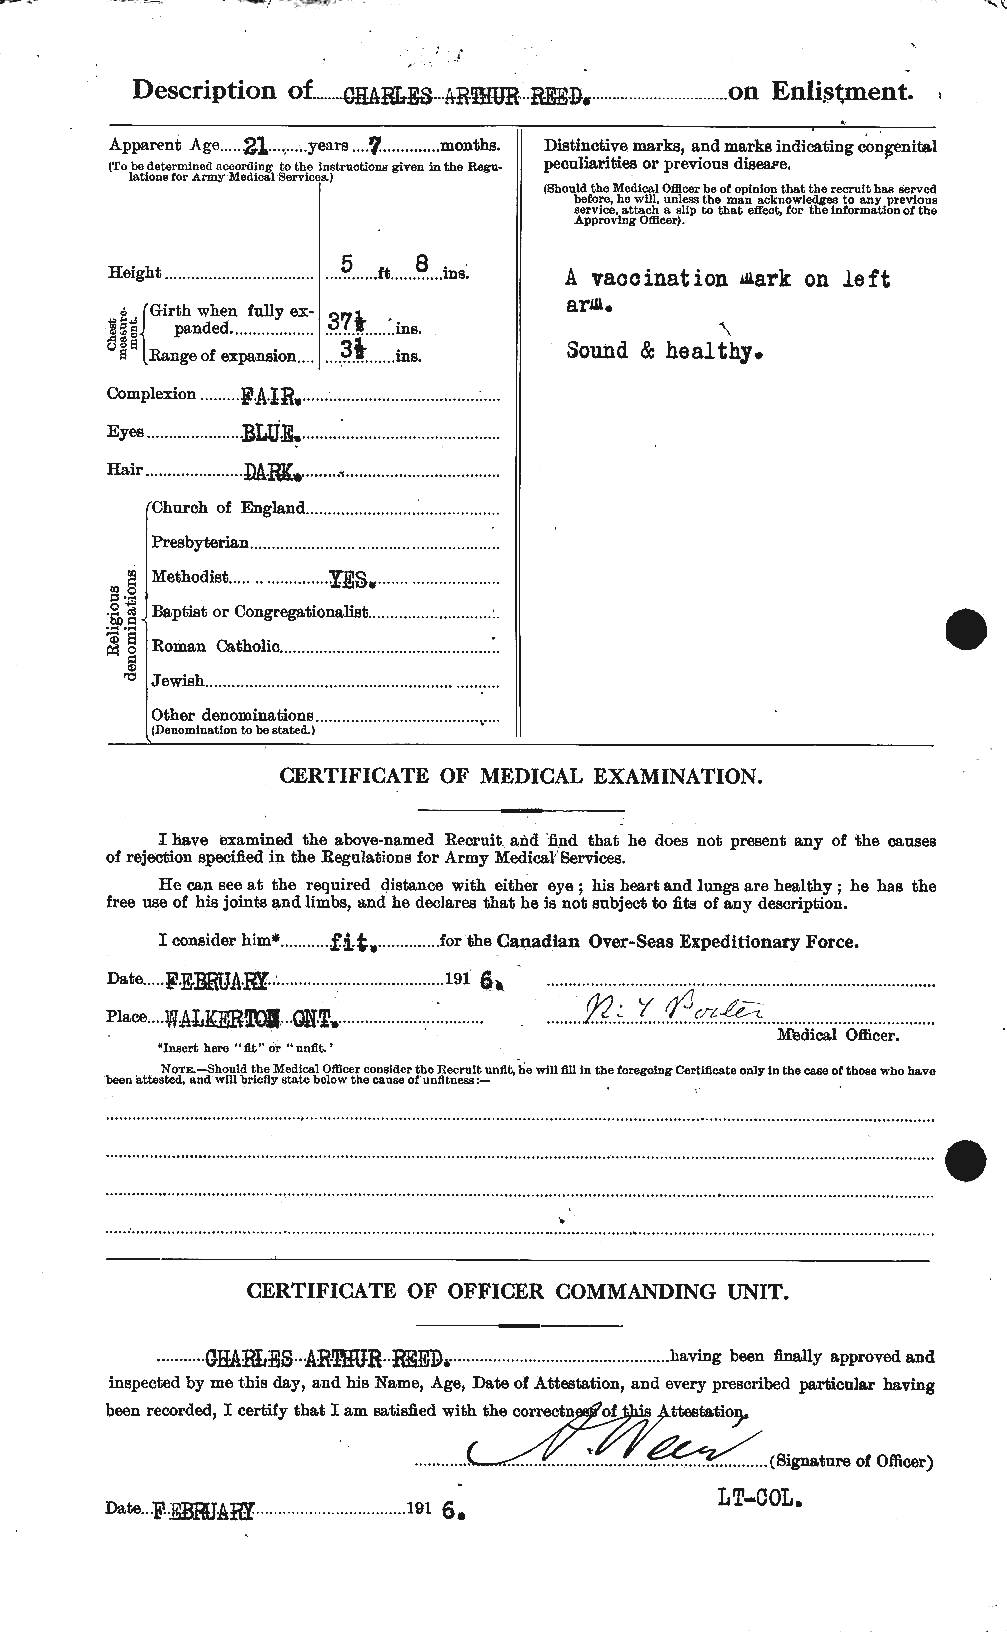 Dossiers du Personnel de la Première Guerre mondiale - CEC 596327b